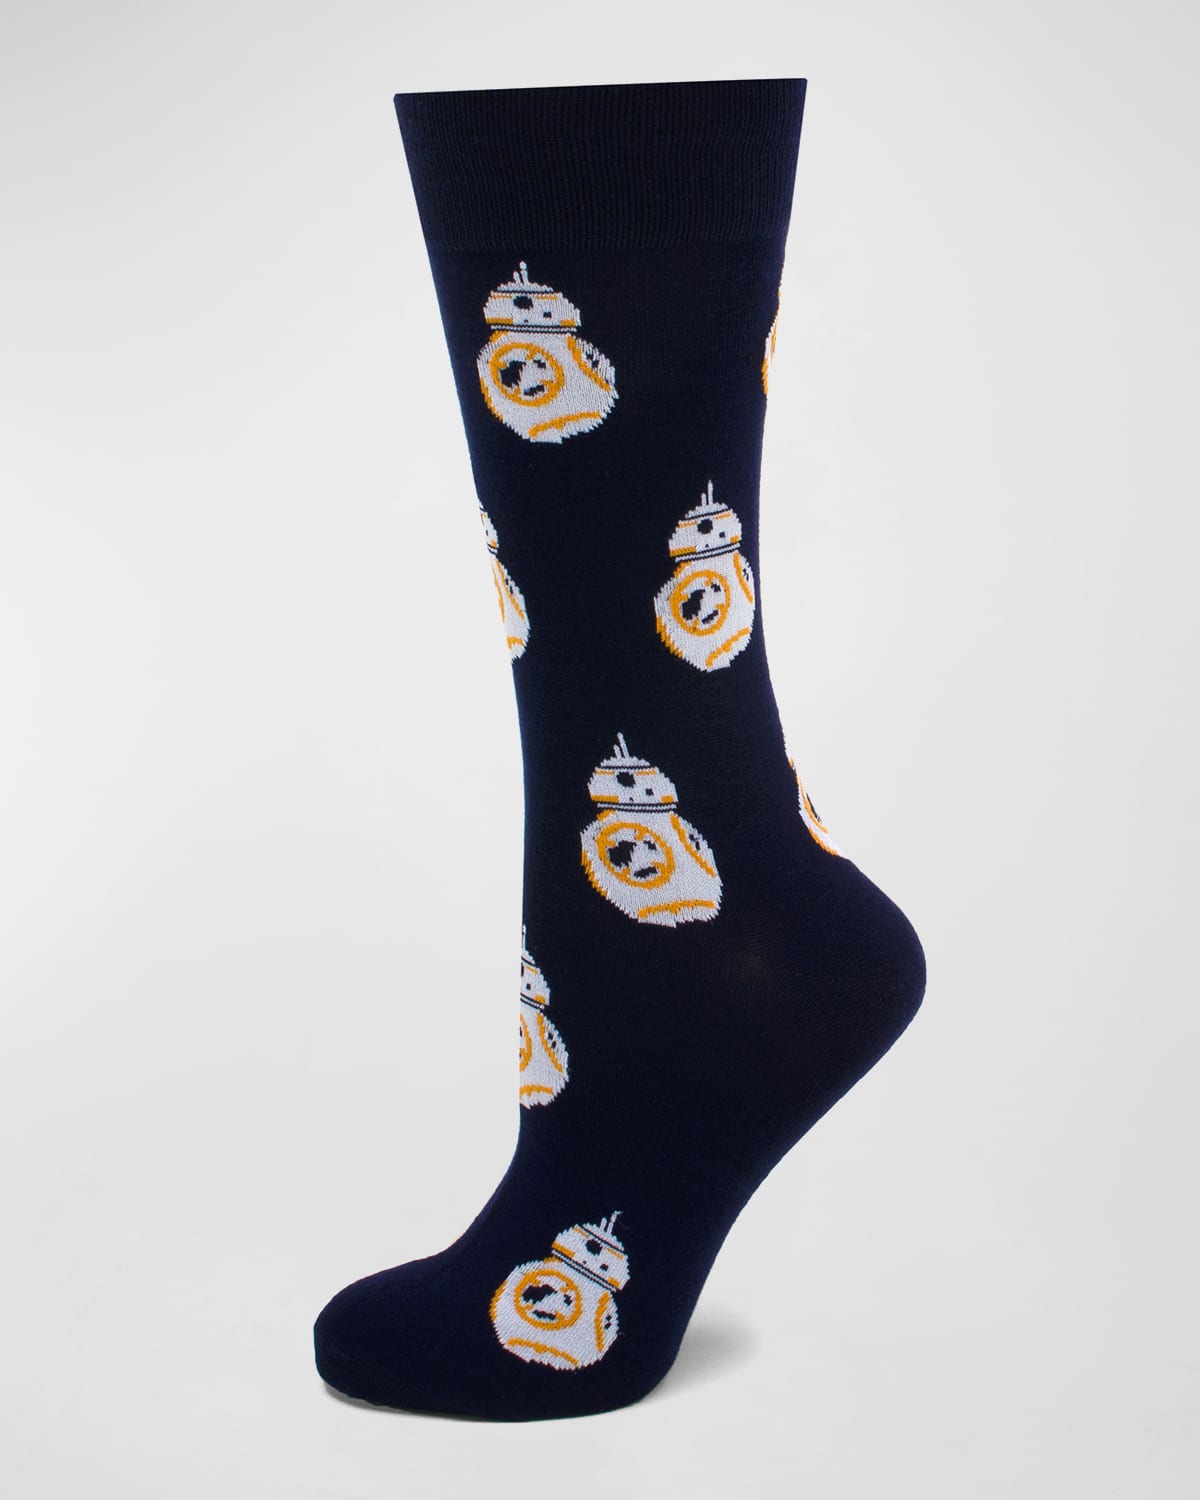 Star Wars BB-8 Droid Socks